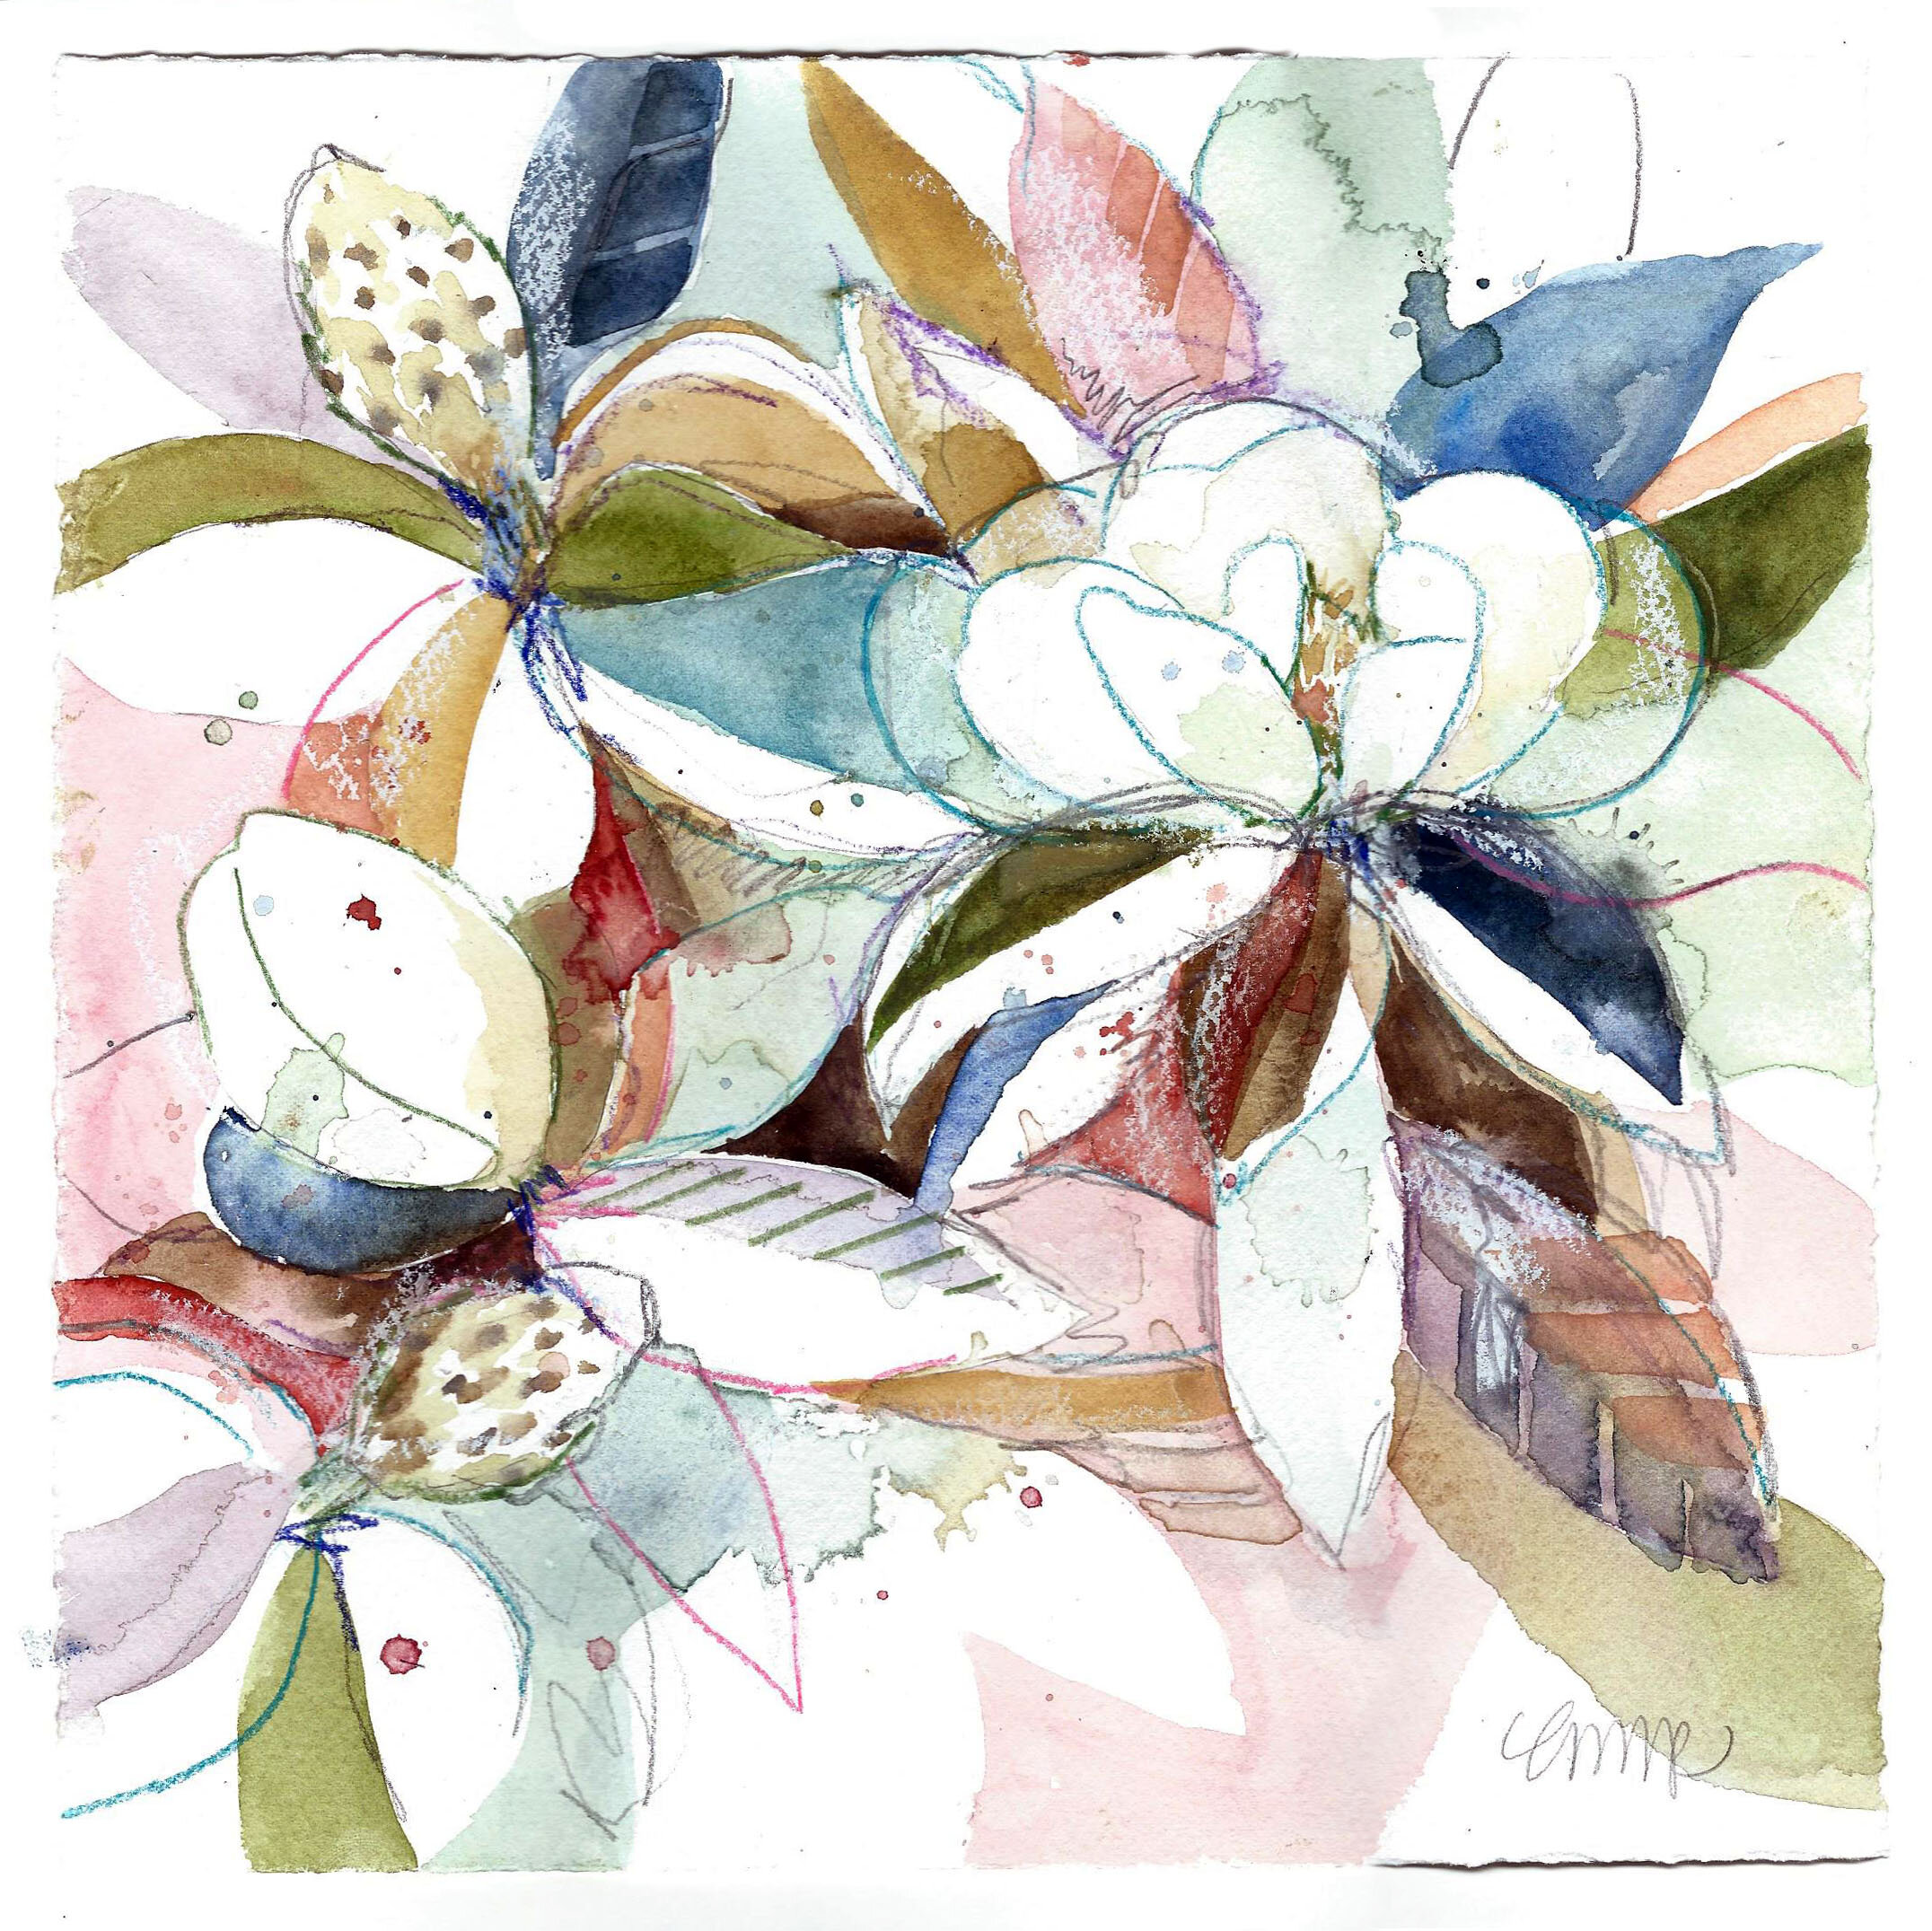 Magnolia original watercolour painting.